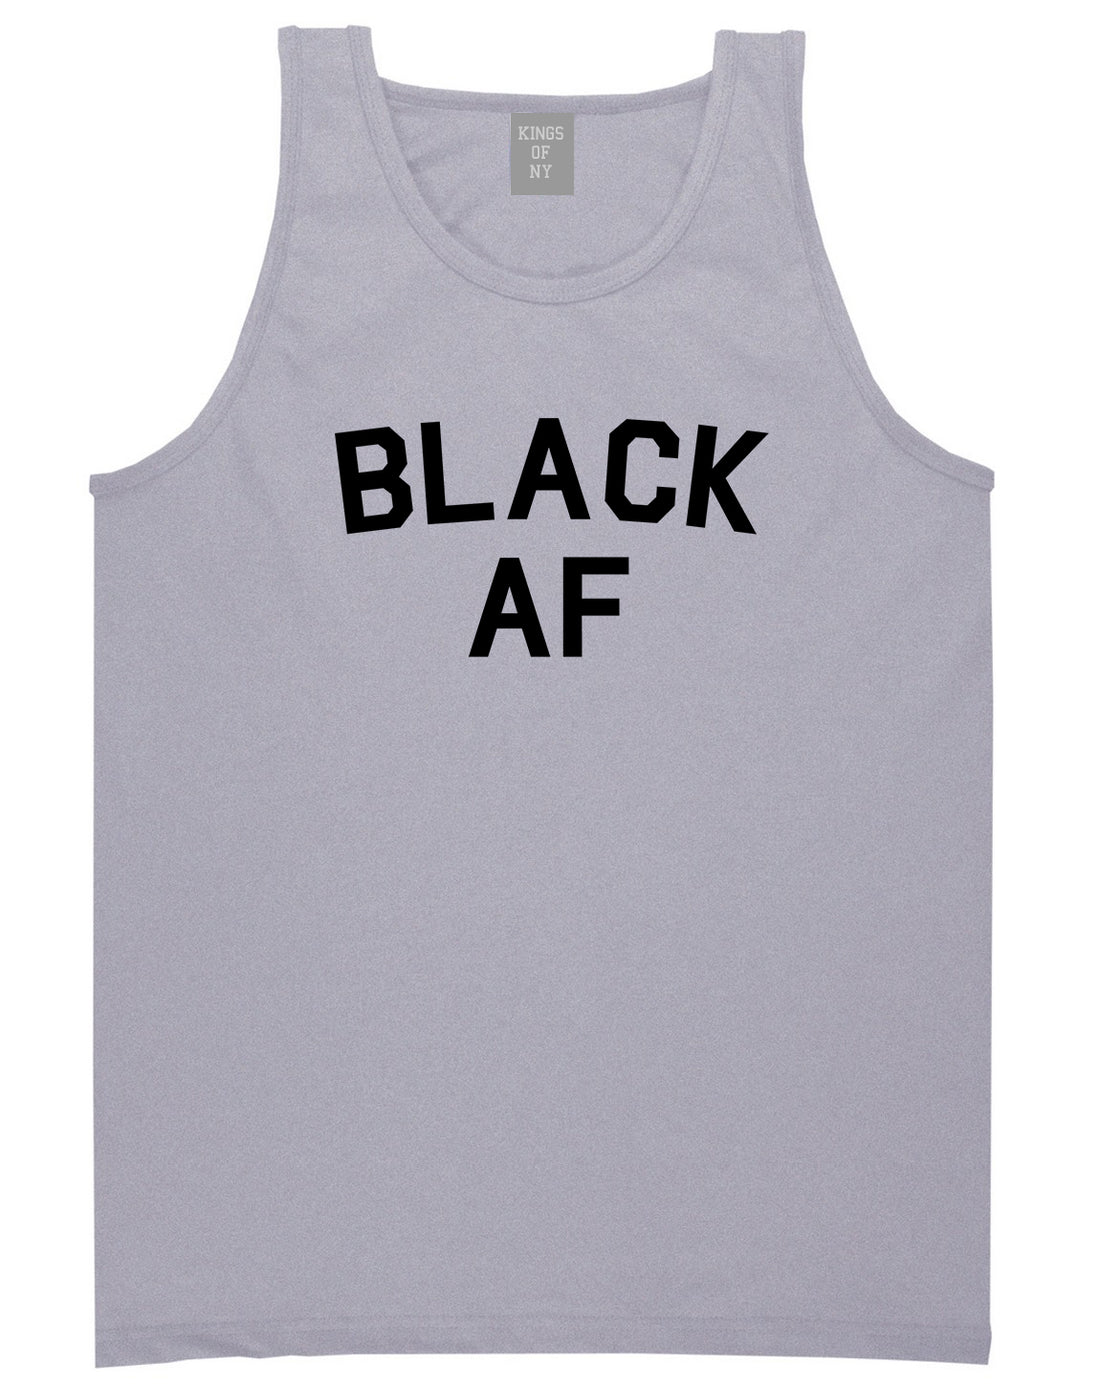 Black AF Mens Tank Top Shirt Grey